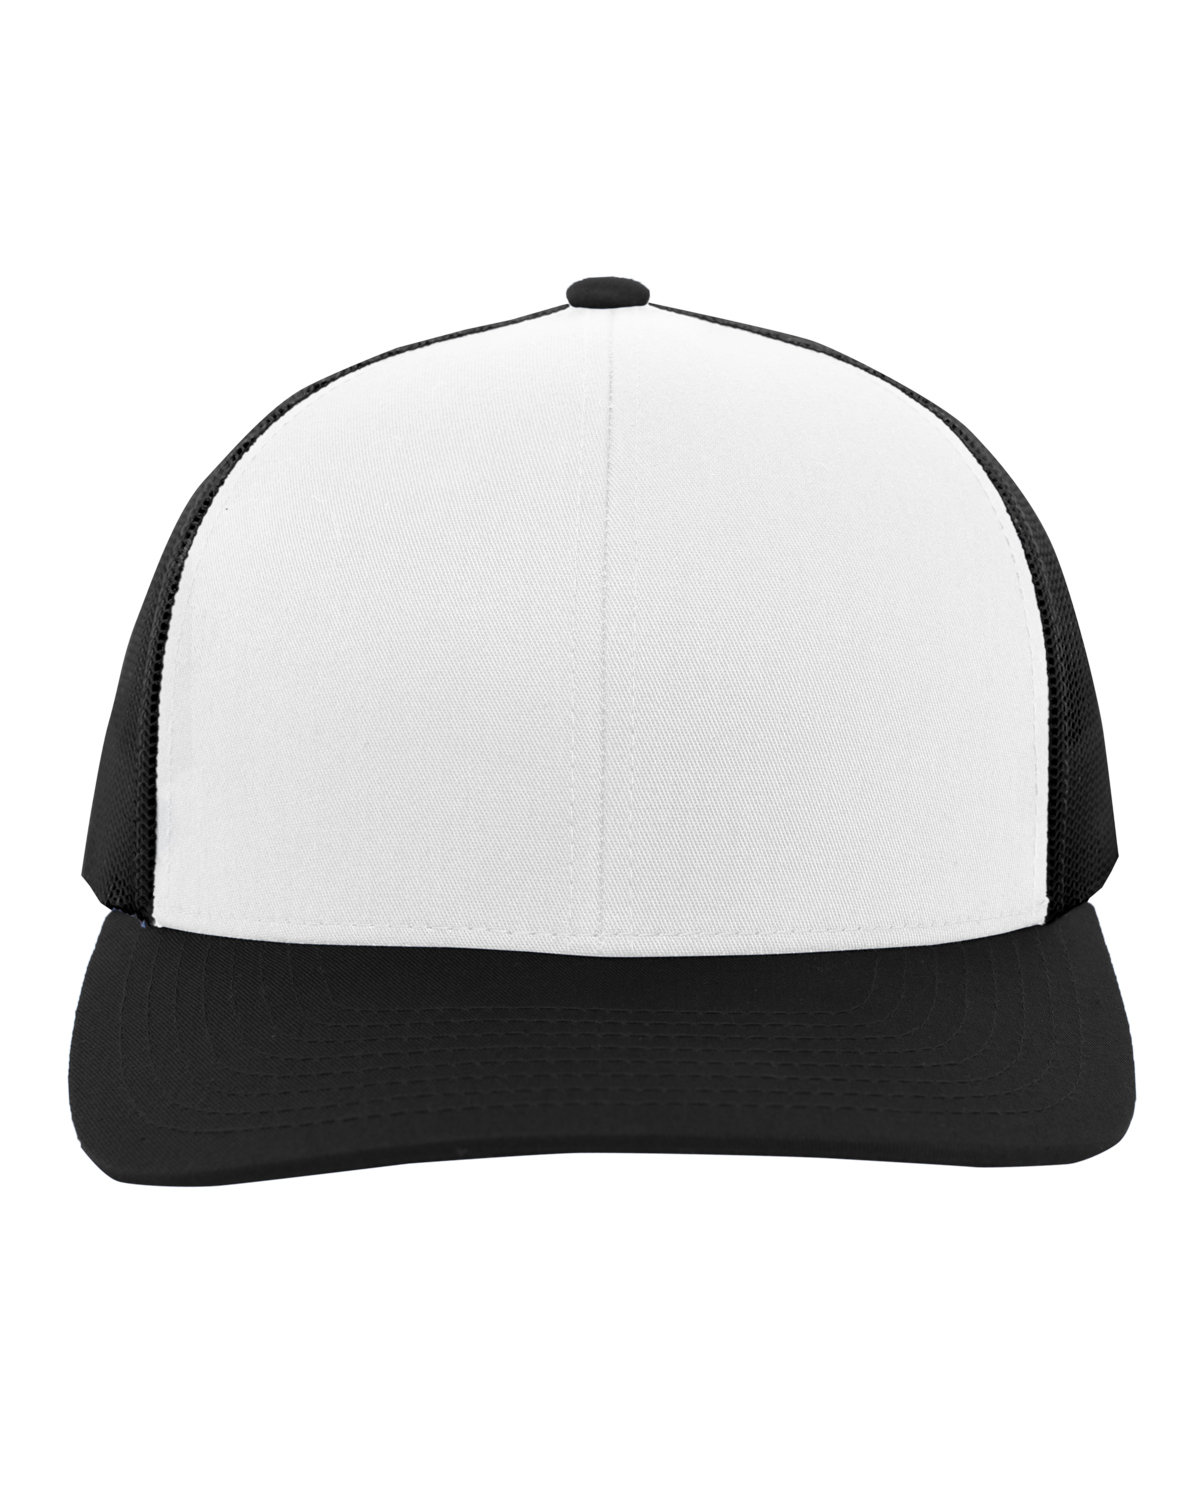 Pacific Headwear Trucker Snapback Hat WHITE/ BLK/ BLK 